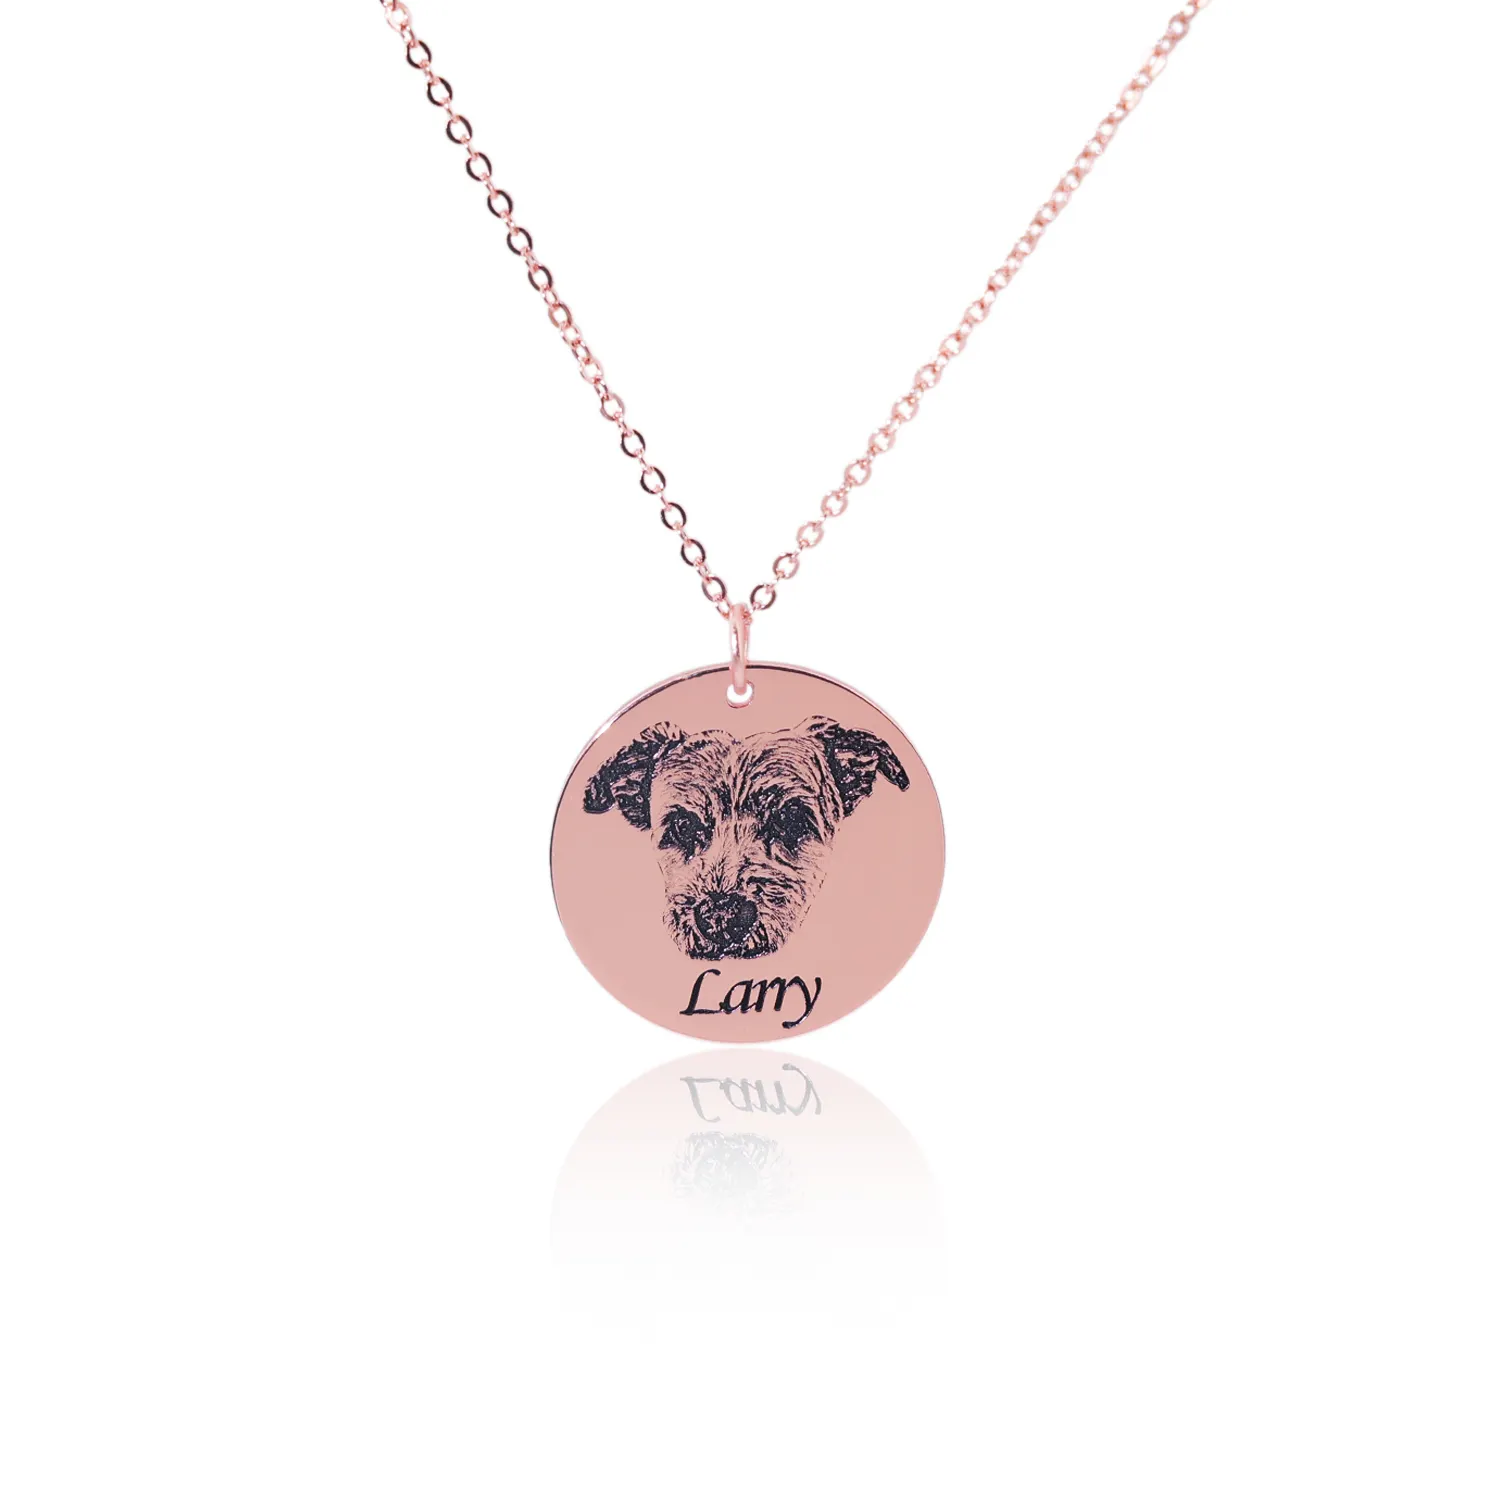 Özel köpek kolye kişiselleştirilmiş 925 ayar gümüş gül altın kaplama daire kolye Pet fotoğraf Charm takı çocuklar için hediye